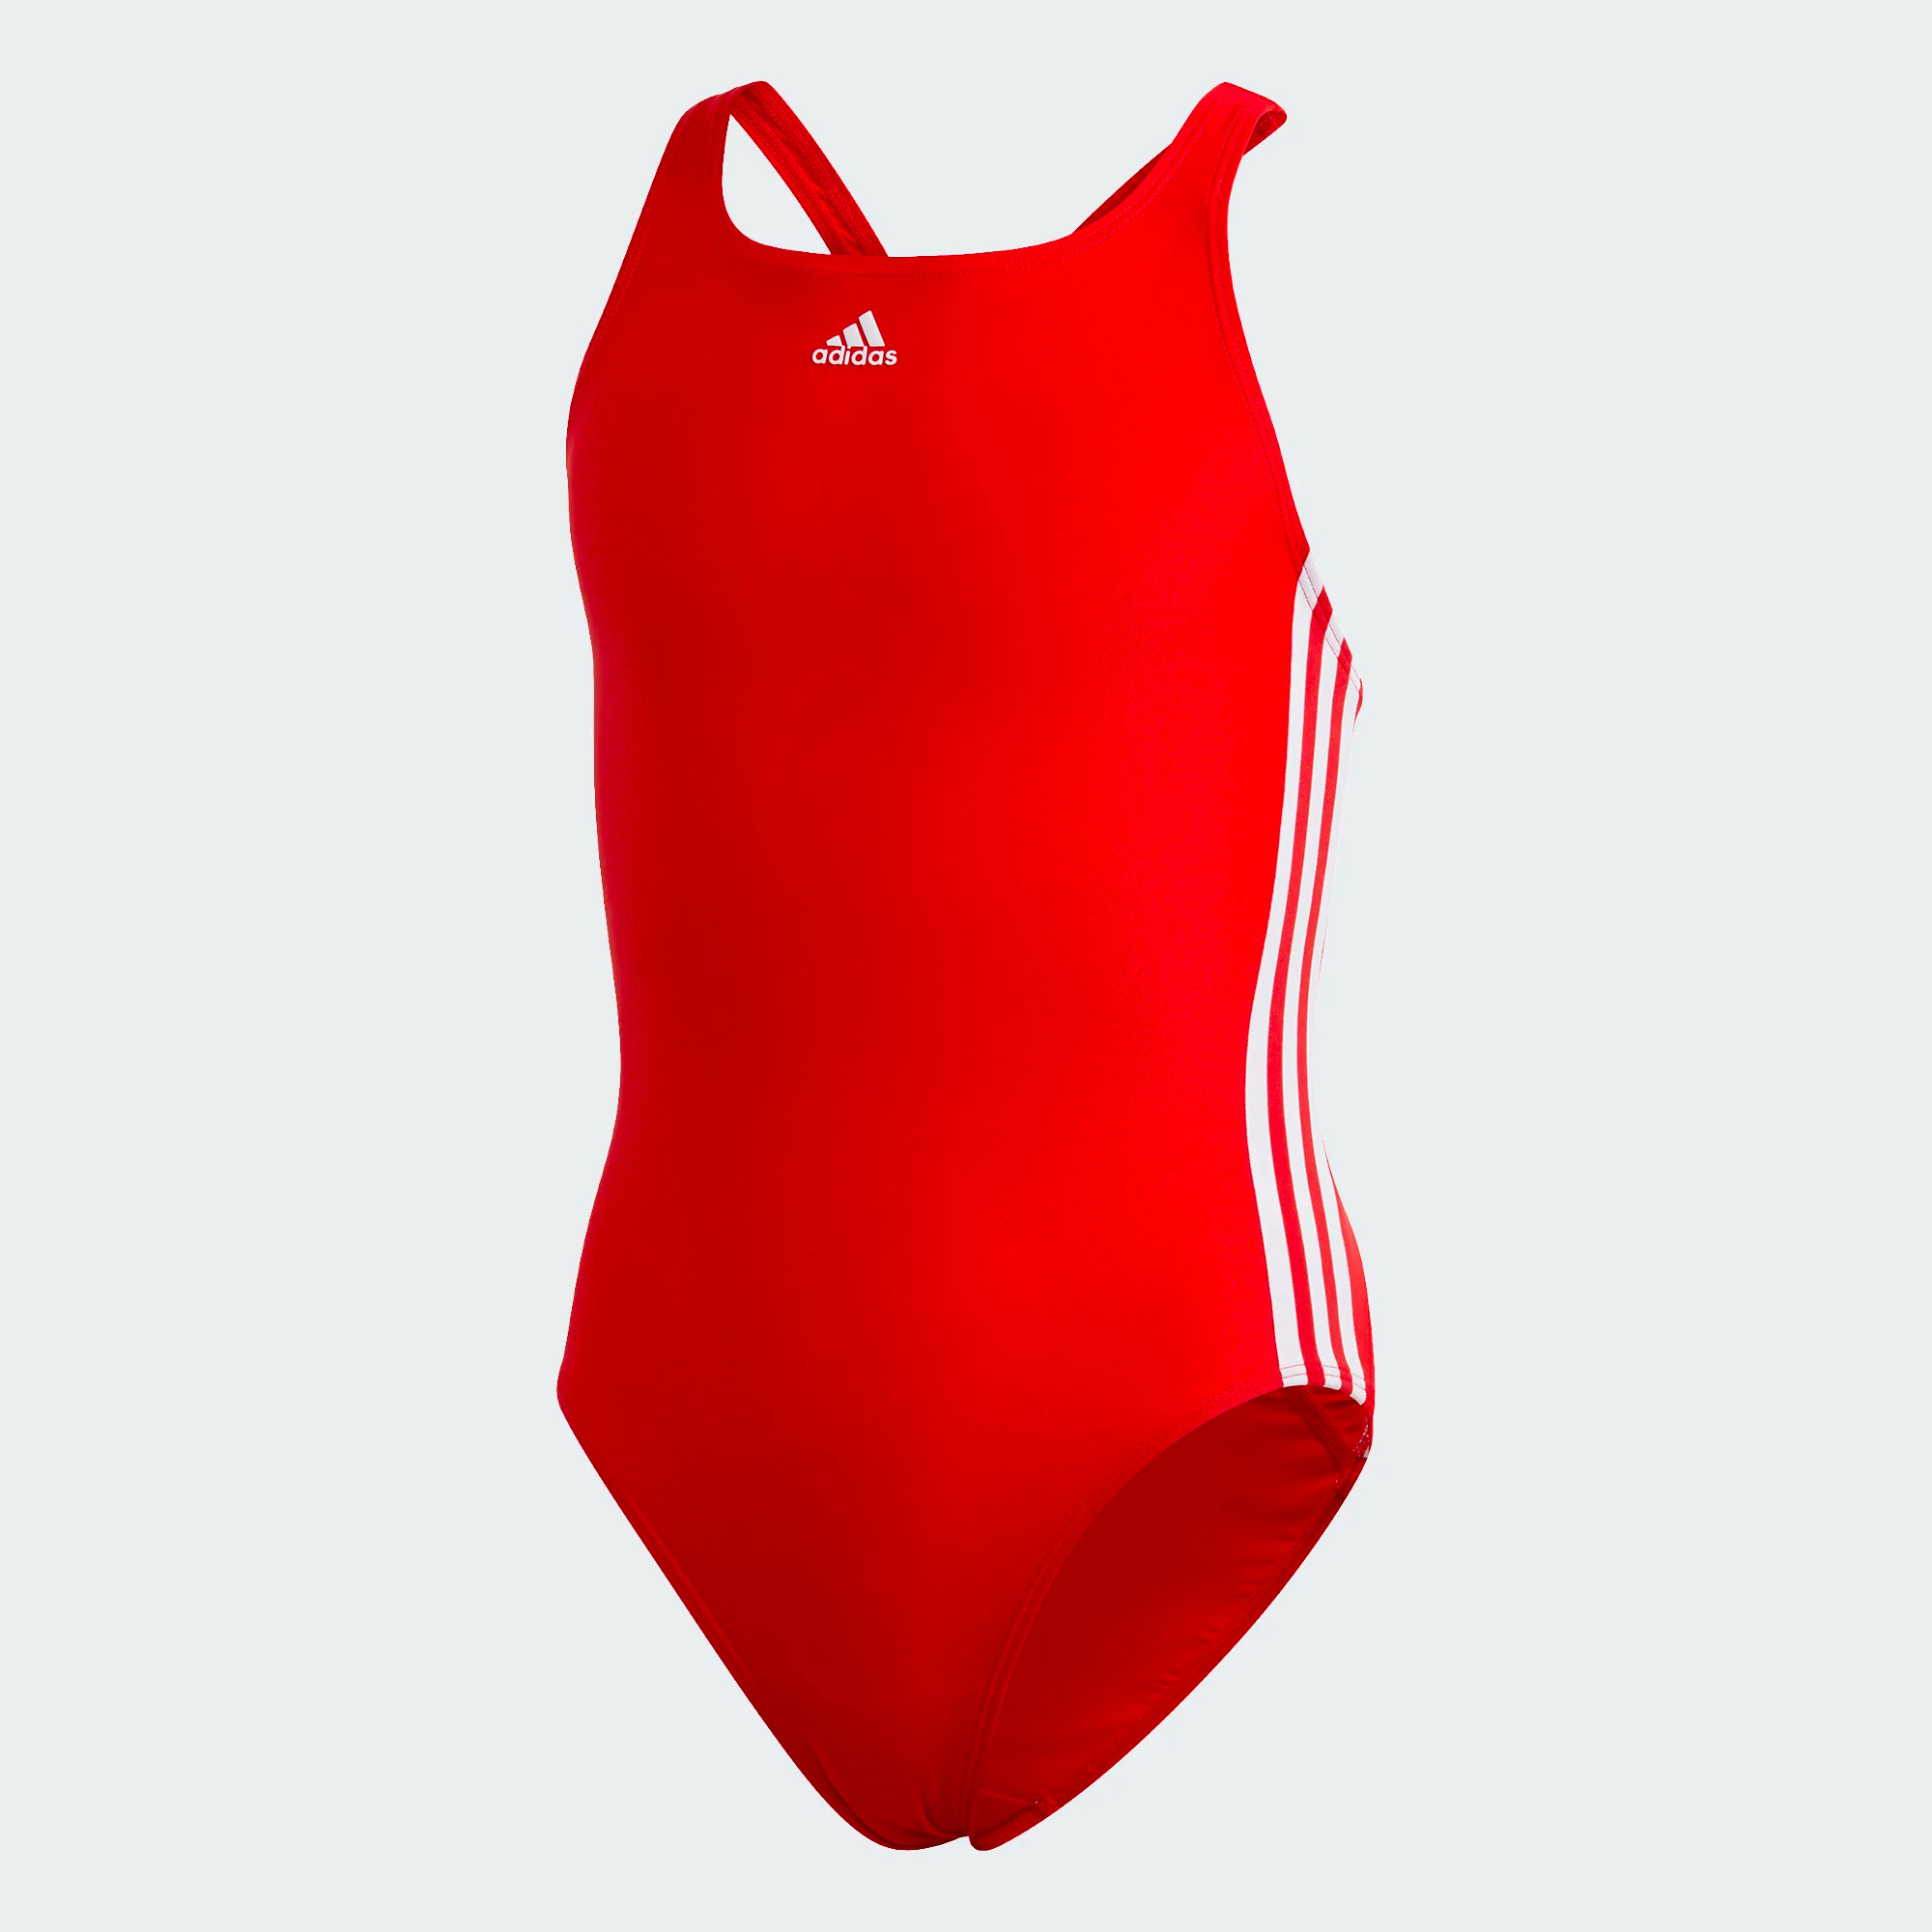 Adidas Athly V 3-Streifen Badeanzug für Mädchen - Rot